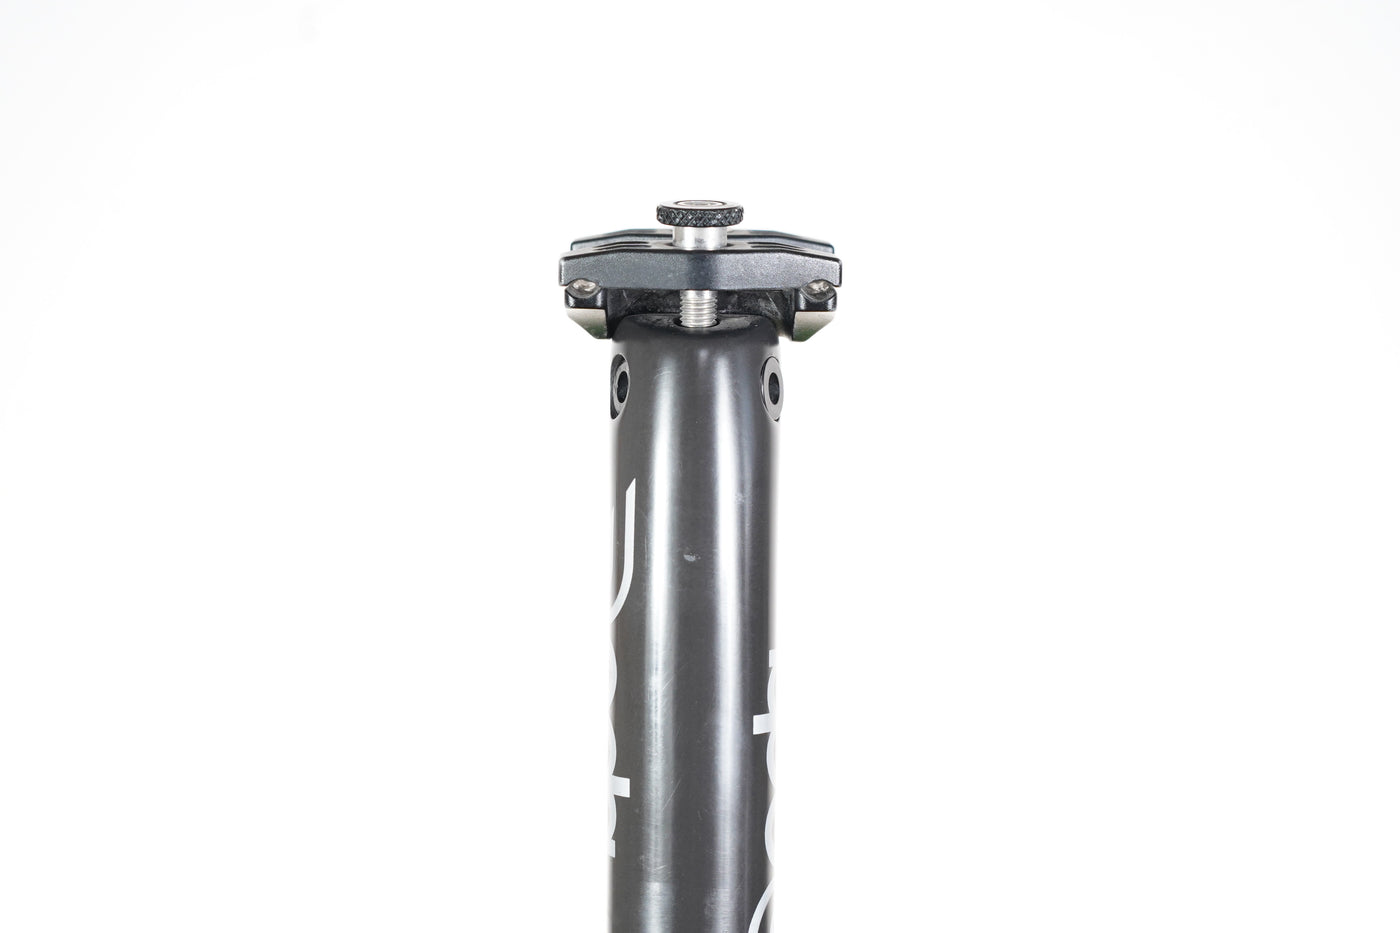 31.6mm Deda Elementi Superleggero Carbon Setback Road Seatpost 158g